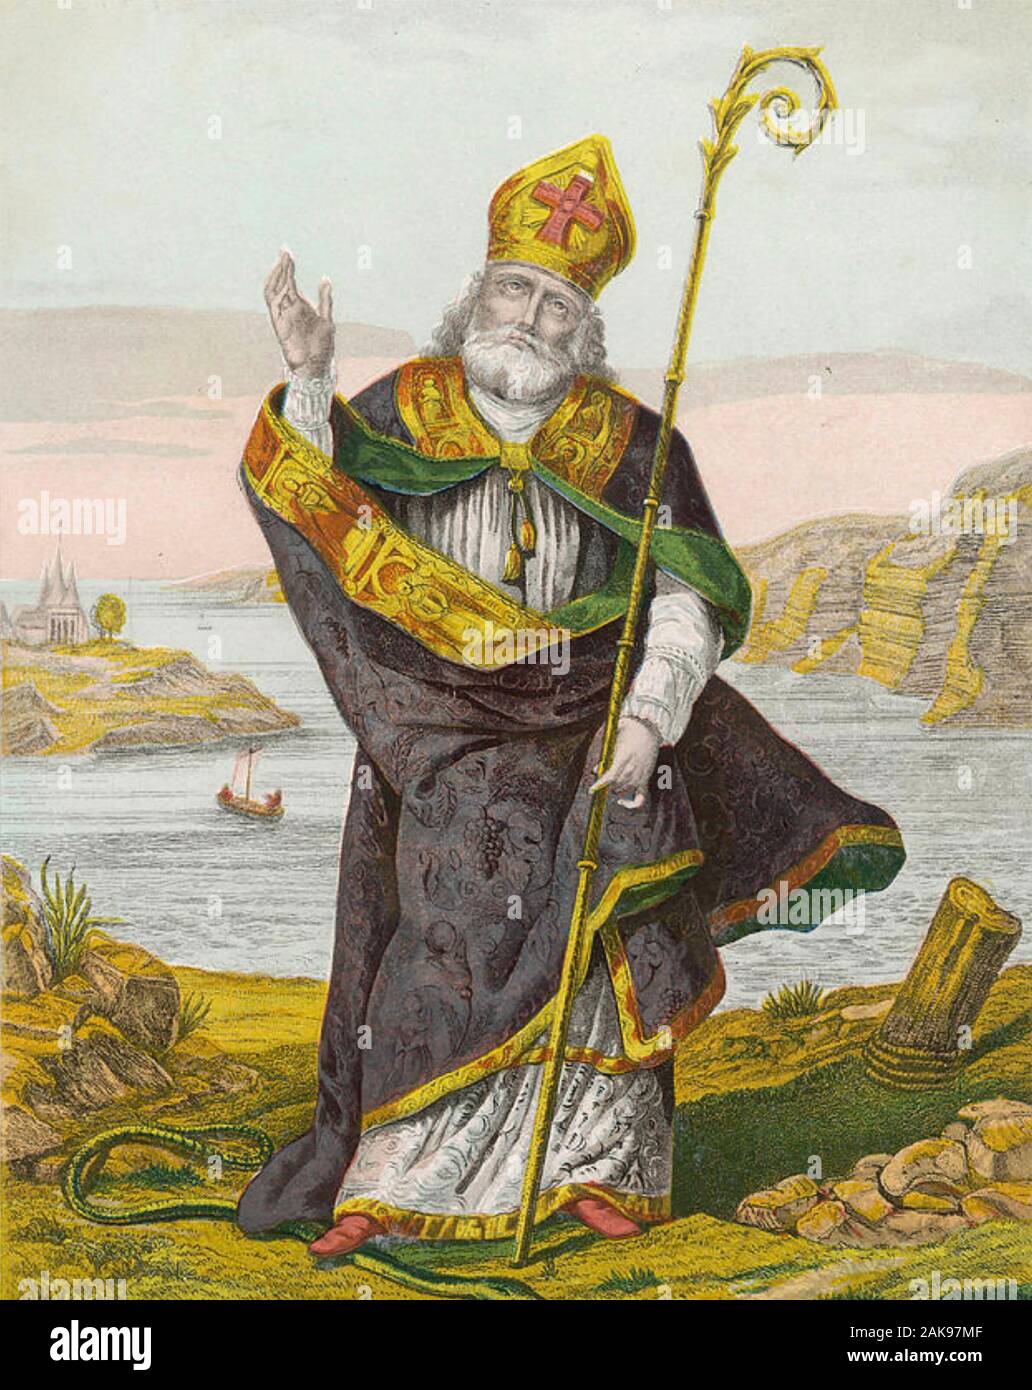 ST PATRICK au 19ème siècle illustration Banque D'Images